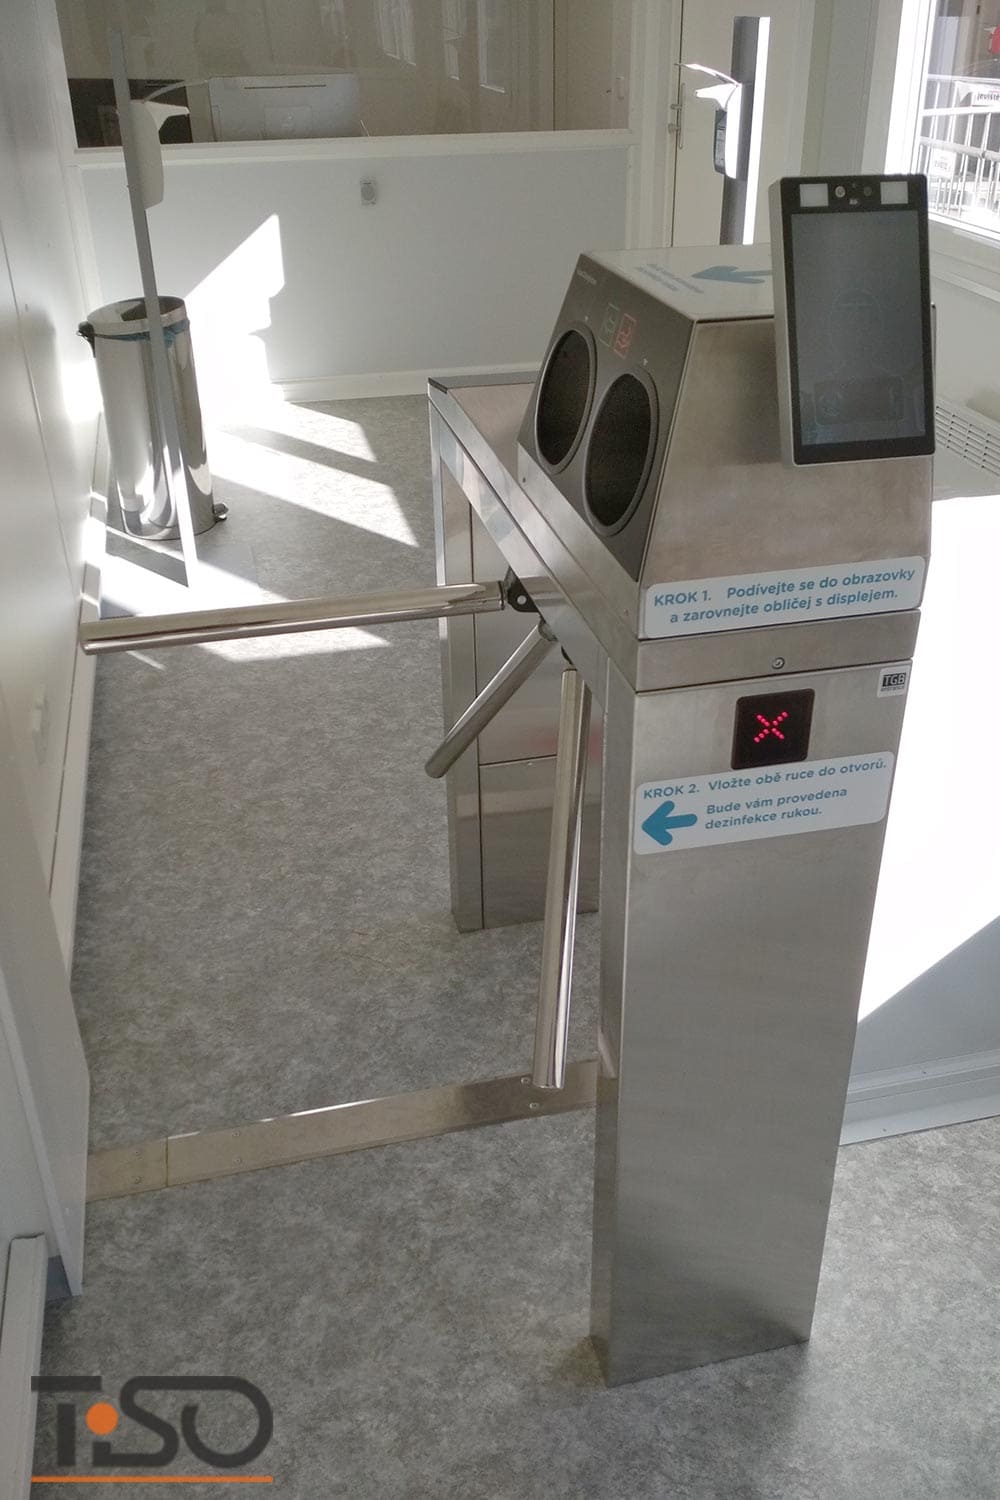 Twix-M e sistema automático de desinfecção das mãos, hospital Horovice, República Tcheca